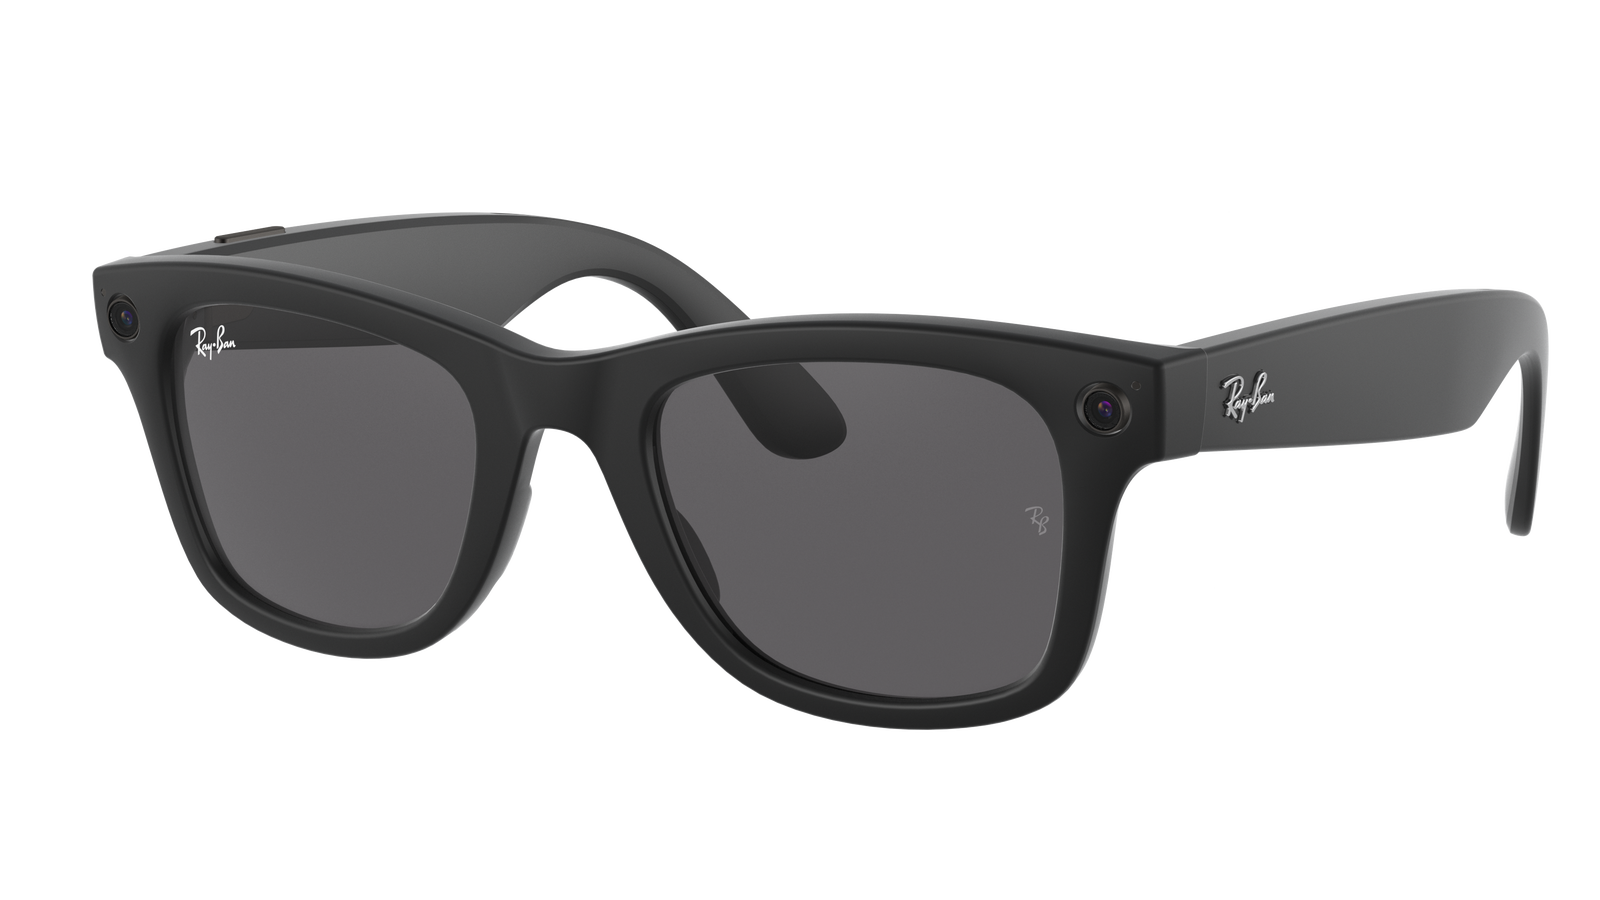 Ray-Ban Stories- Les nouvelles lunettes intelligentes de Facebook